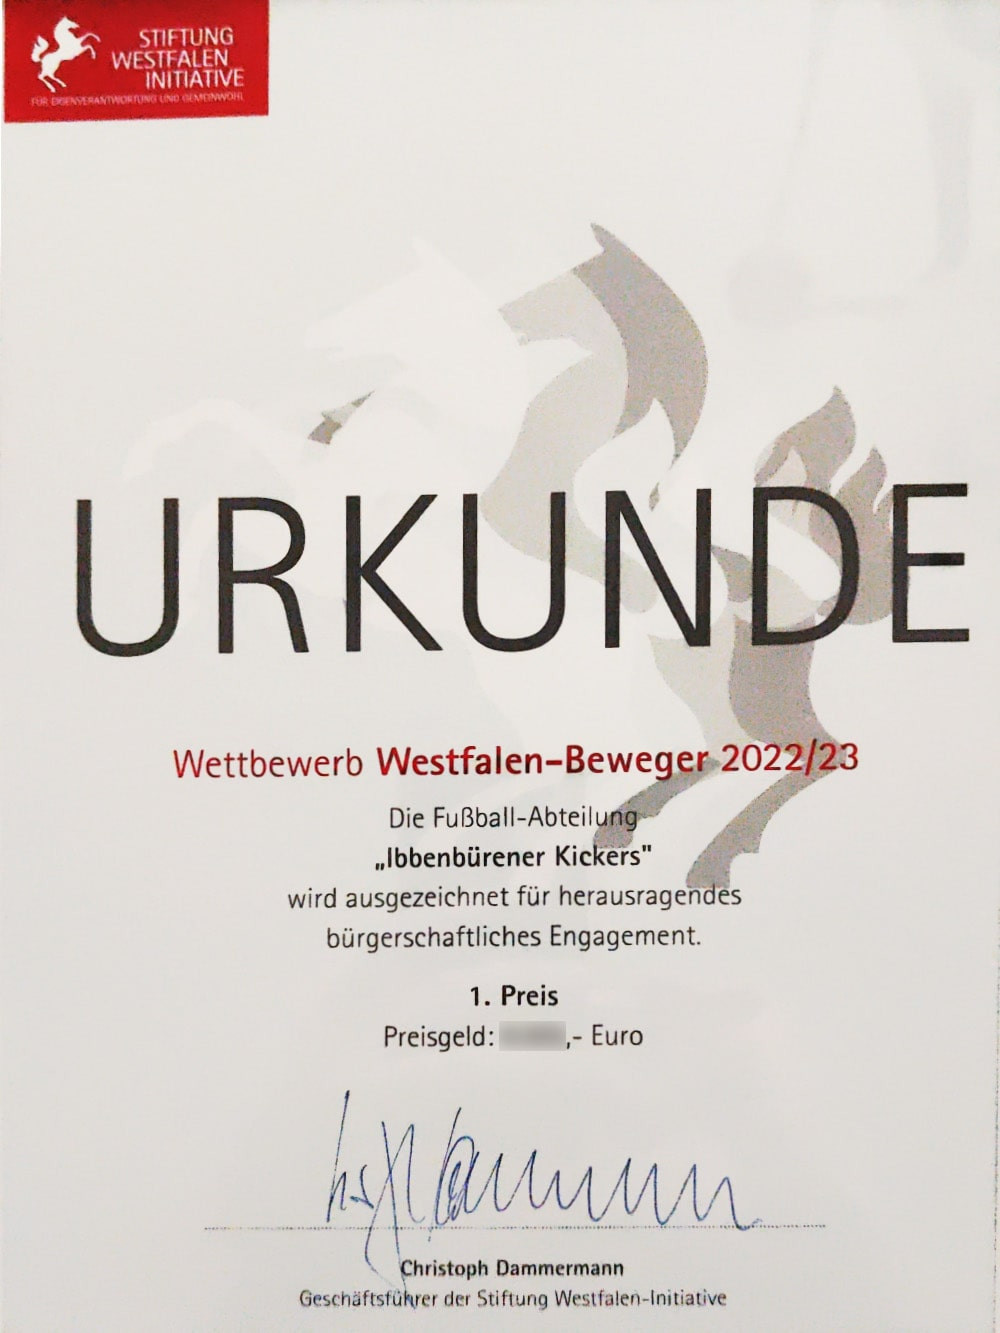 Abbildung zeigt: Die Urkunde des WestfalenBewegers Ibbenbürener Kickers 2023